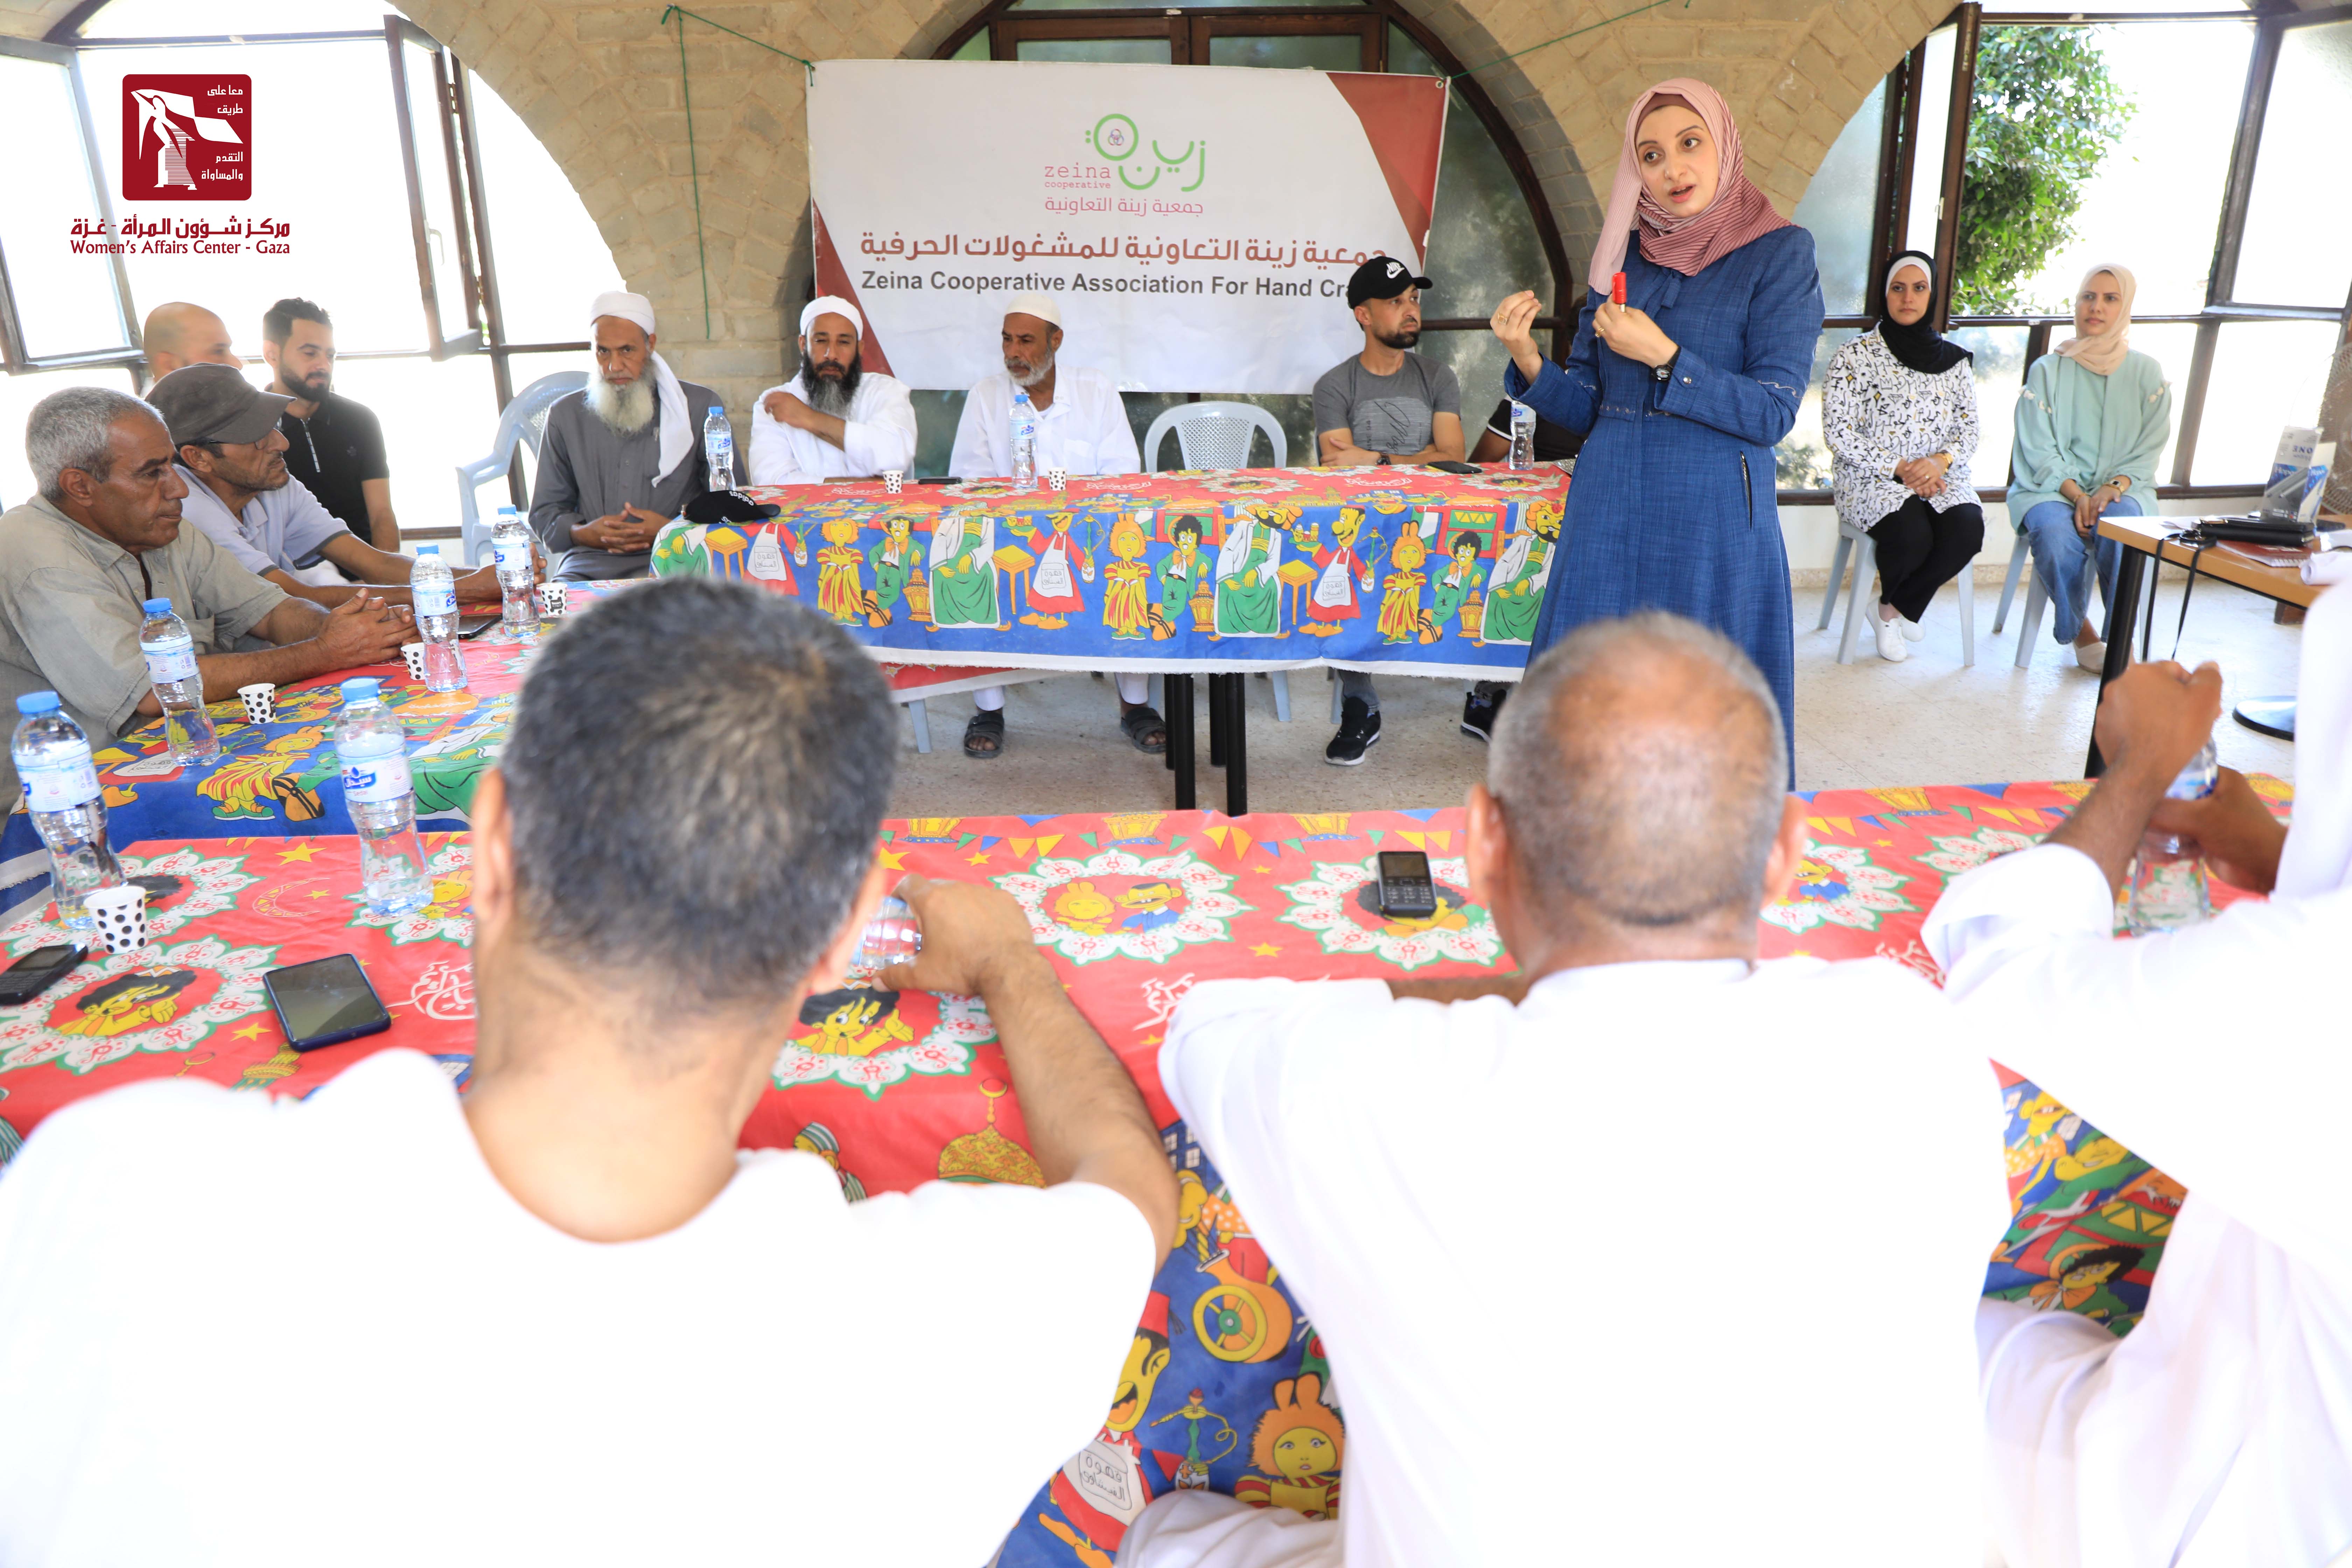 مركز شؤون المرأة ينفذ "14" ورشة بالشراكة مع برنامج غزة للصحة النفسية